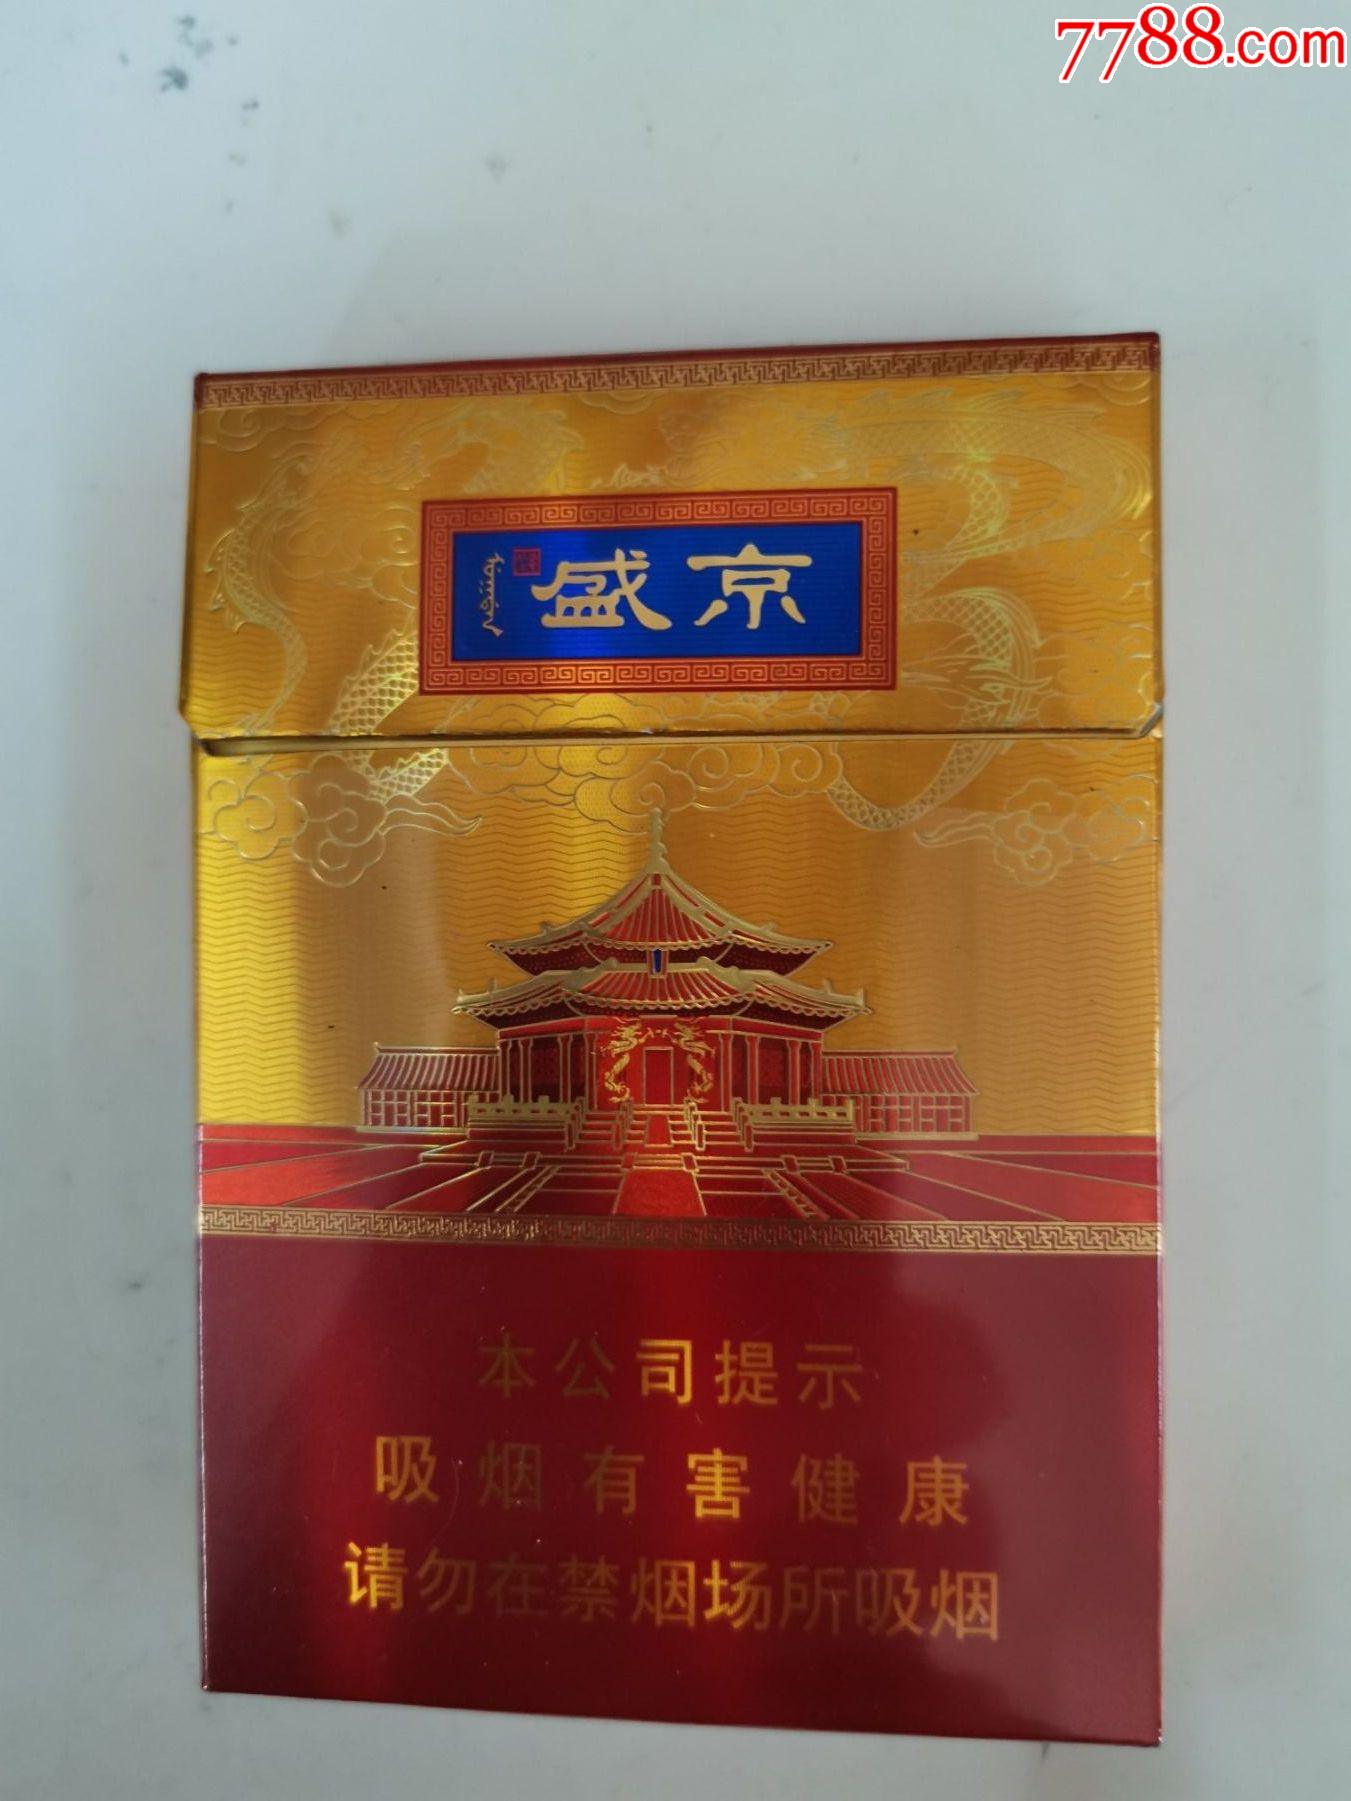 盛京香烟卷烟图片